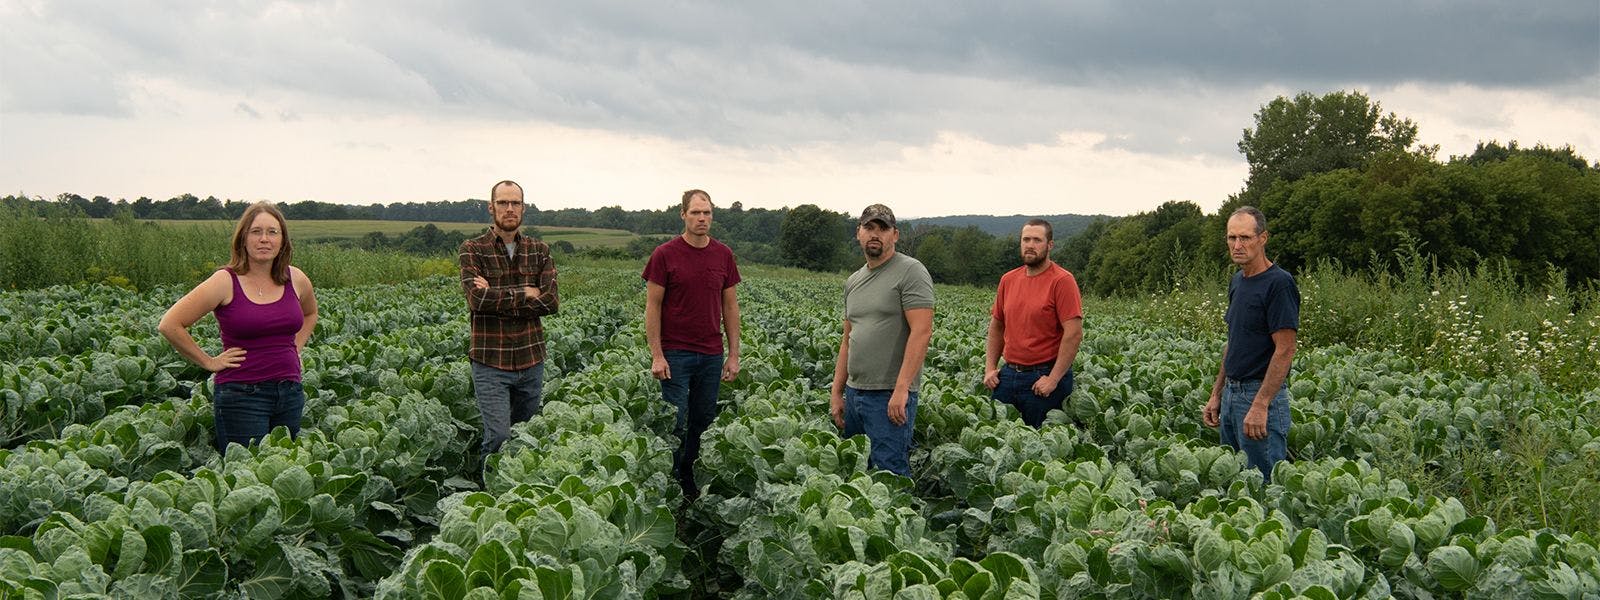 Farmers standing between rows of vegetables.